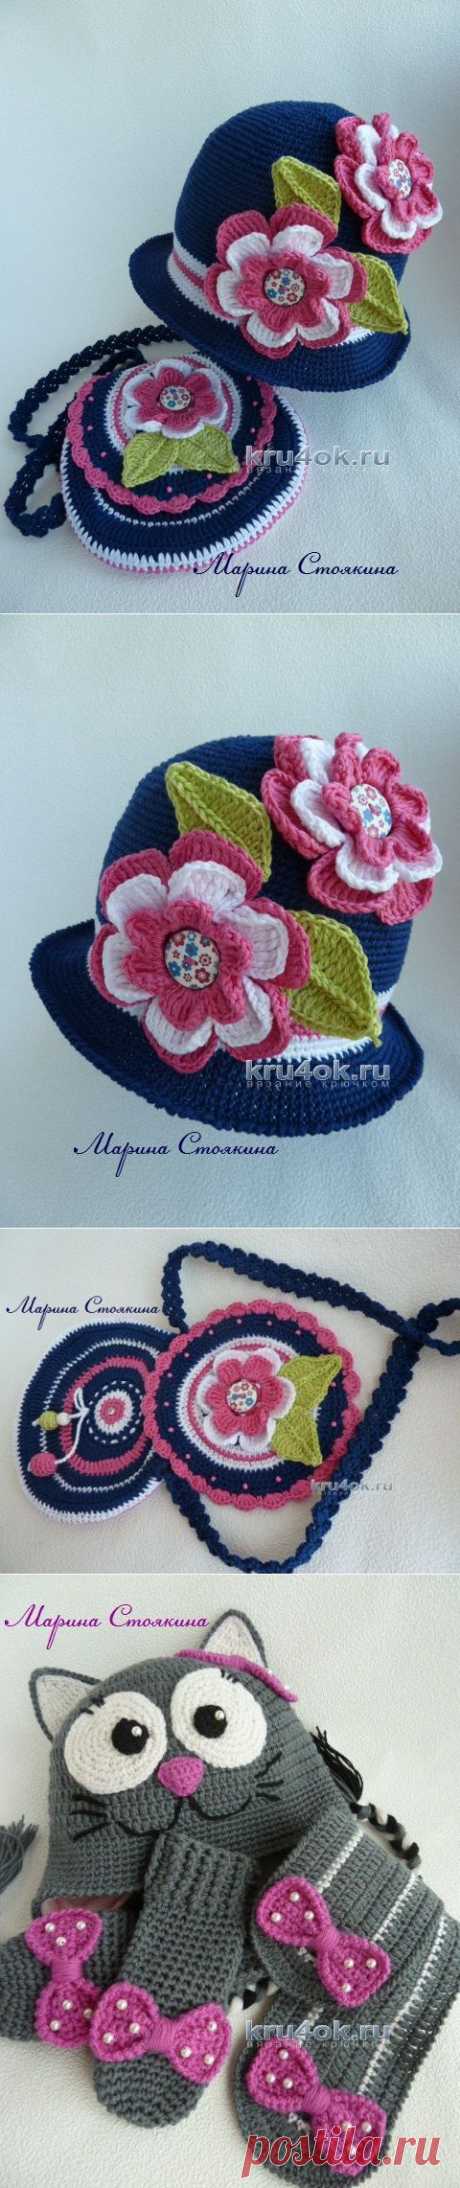 Комплекты для девочки — работы Марины Стоякиной - вязание крючком на kru4ok.ru